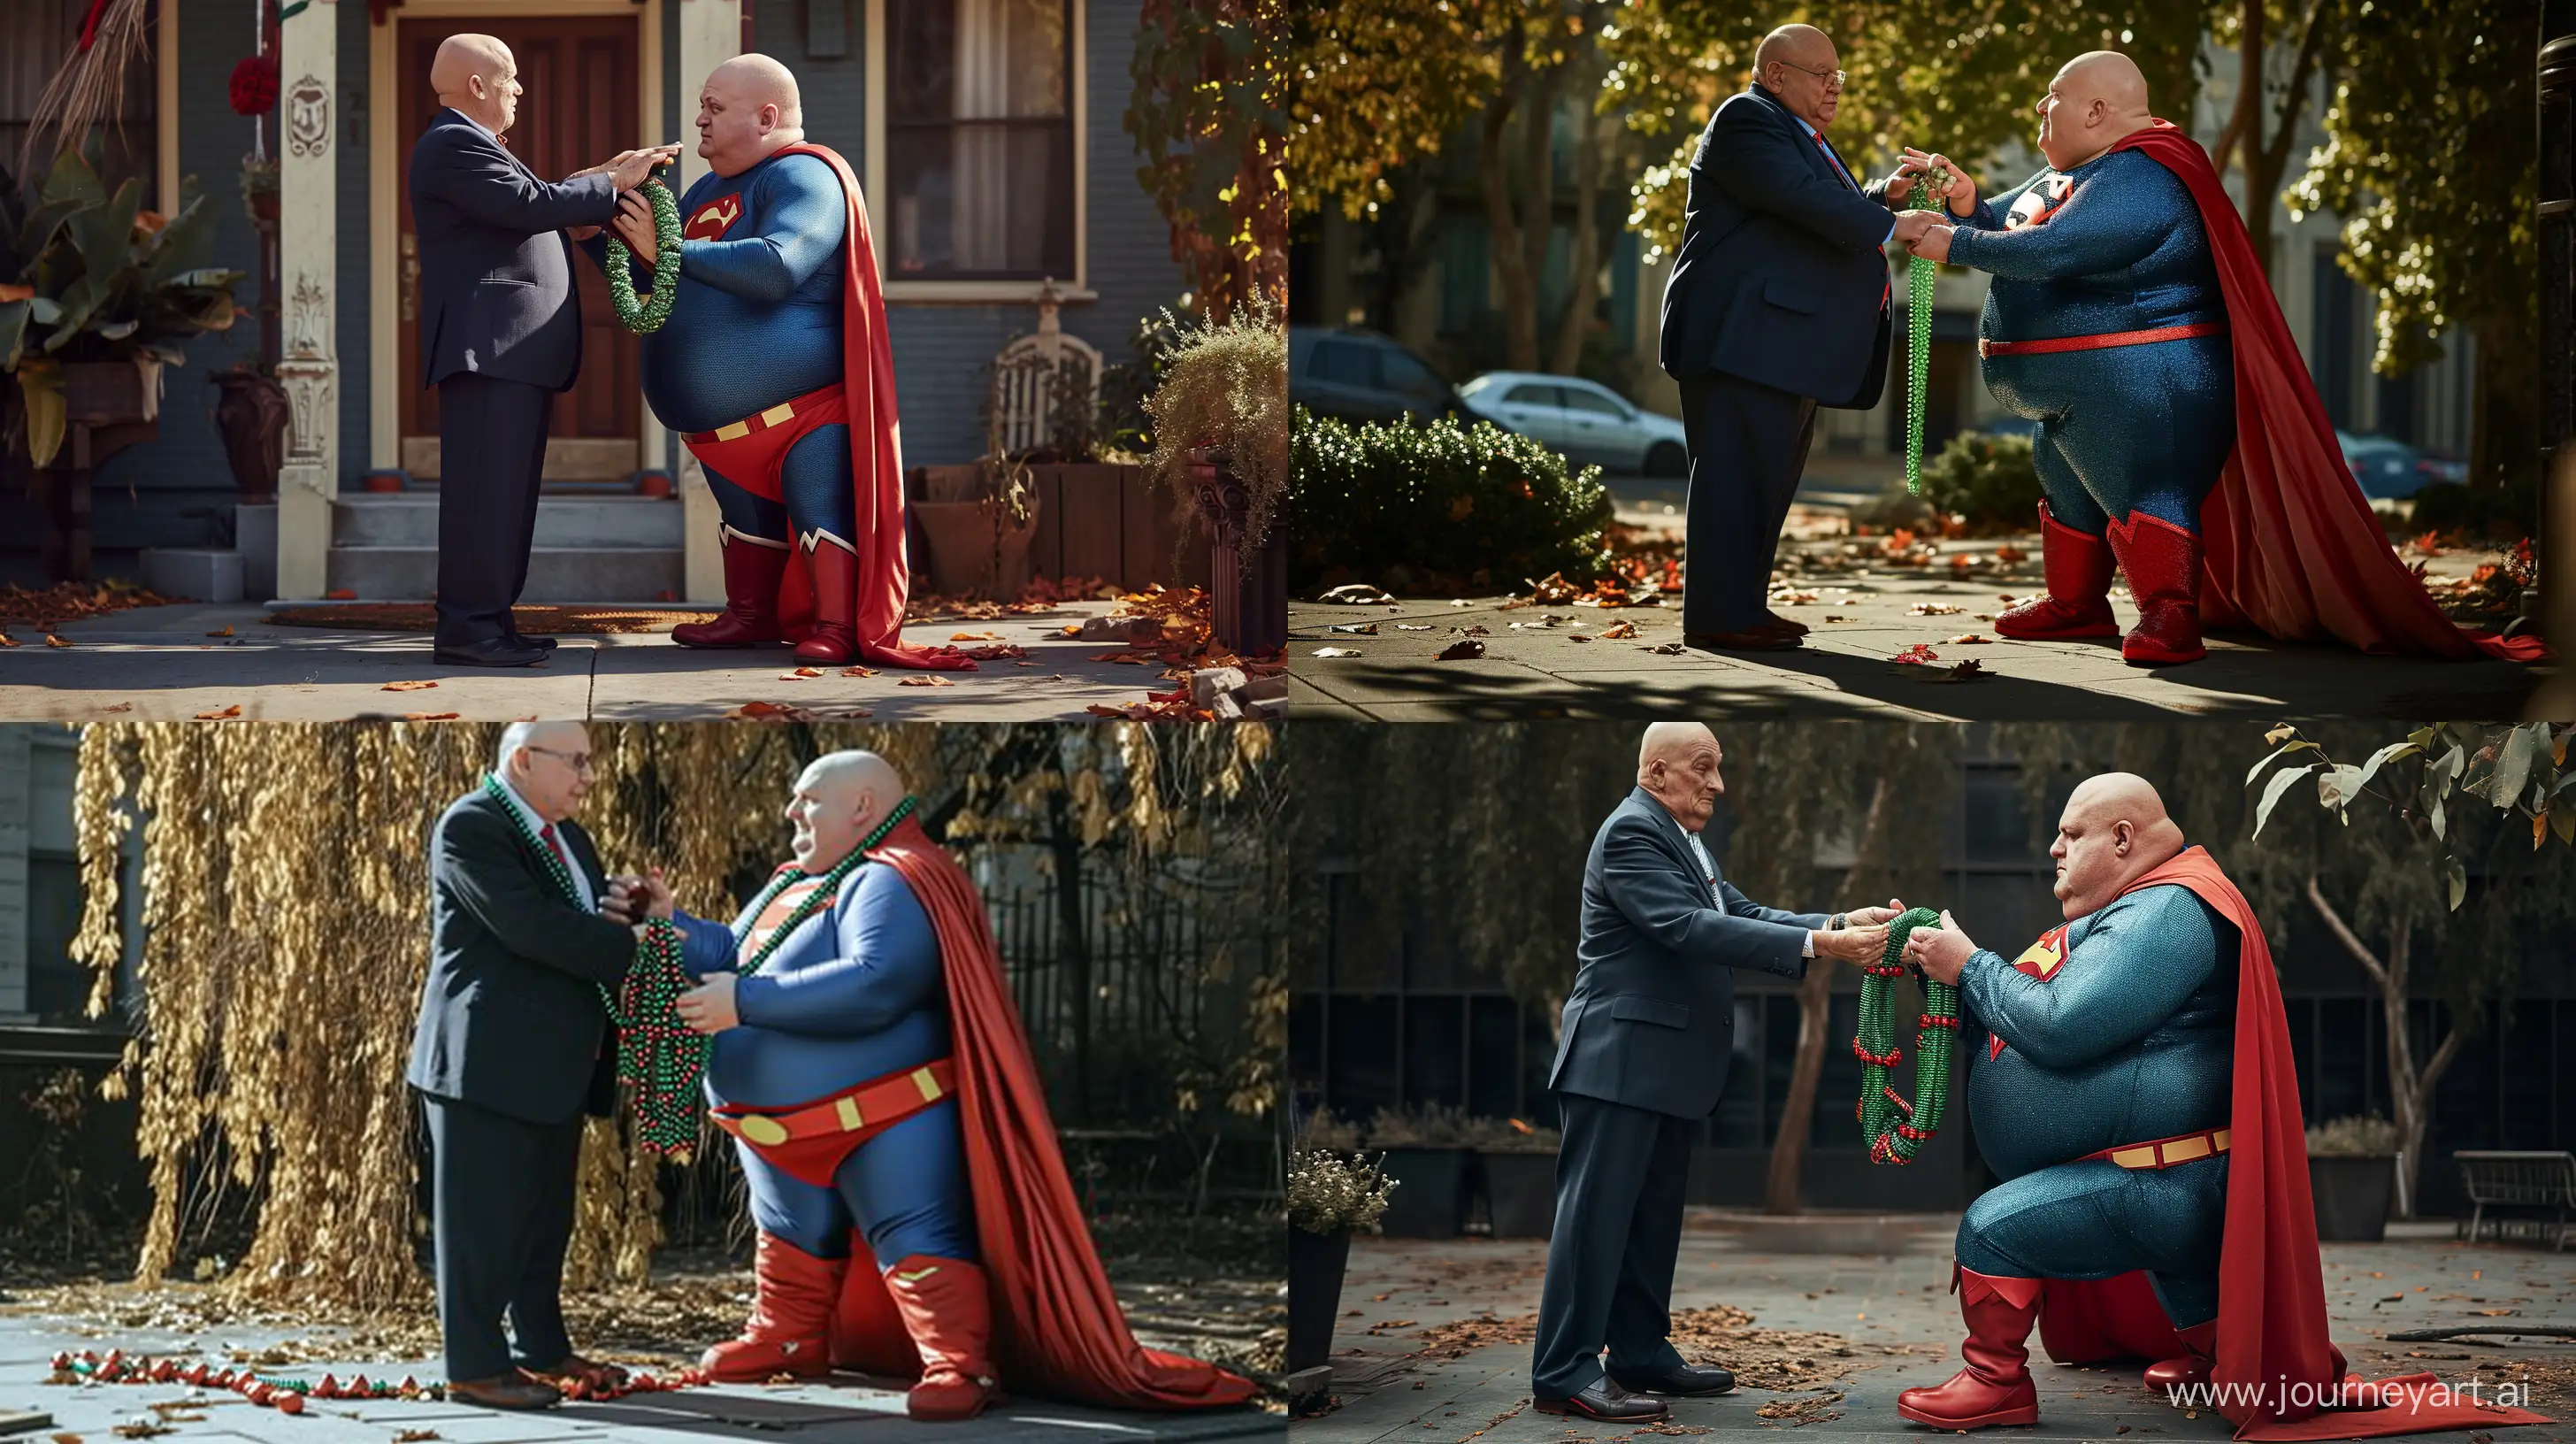 Elderly-Superman-Receives-Unique-Green-Necklace-in-Heartwarming-Outdoor-Scene